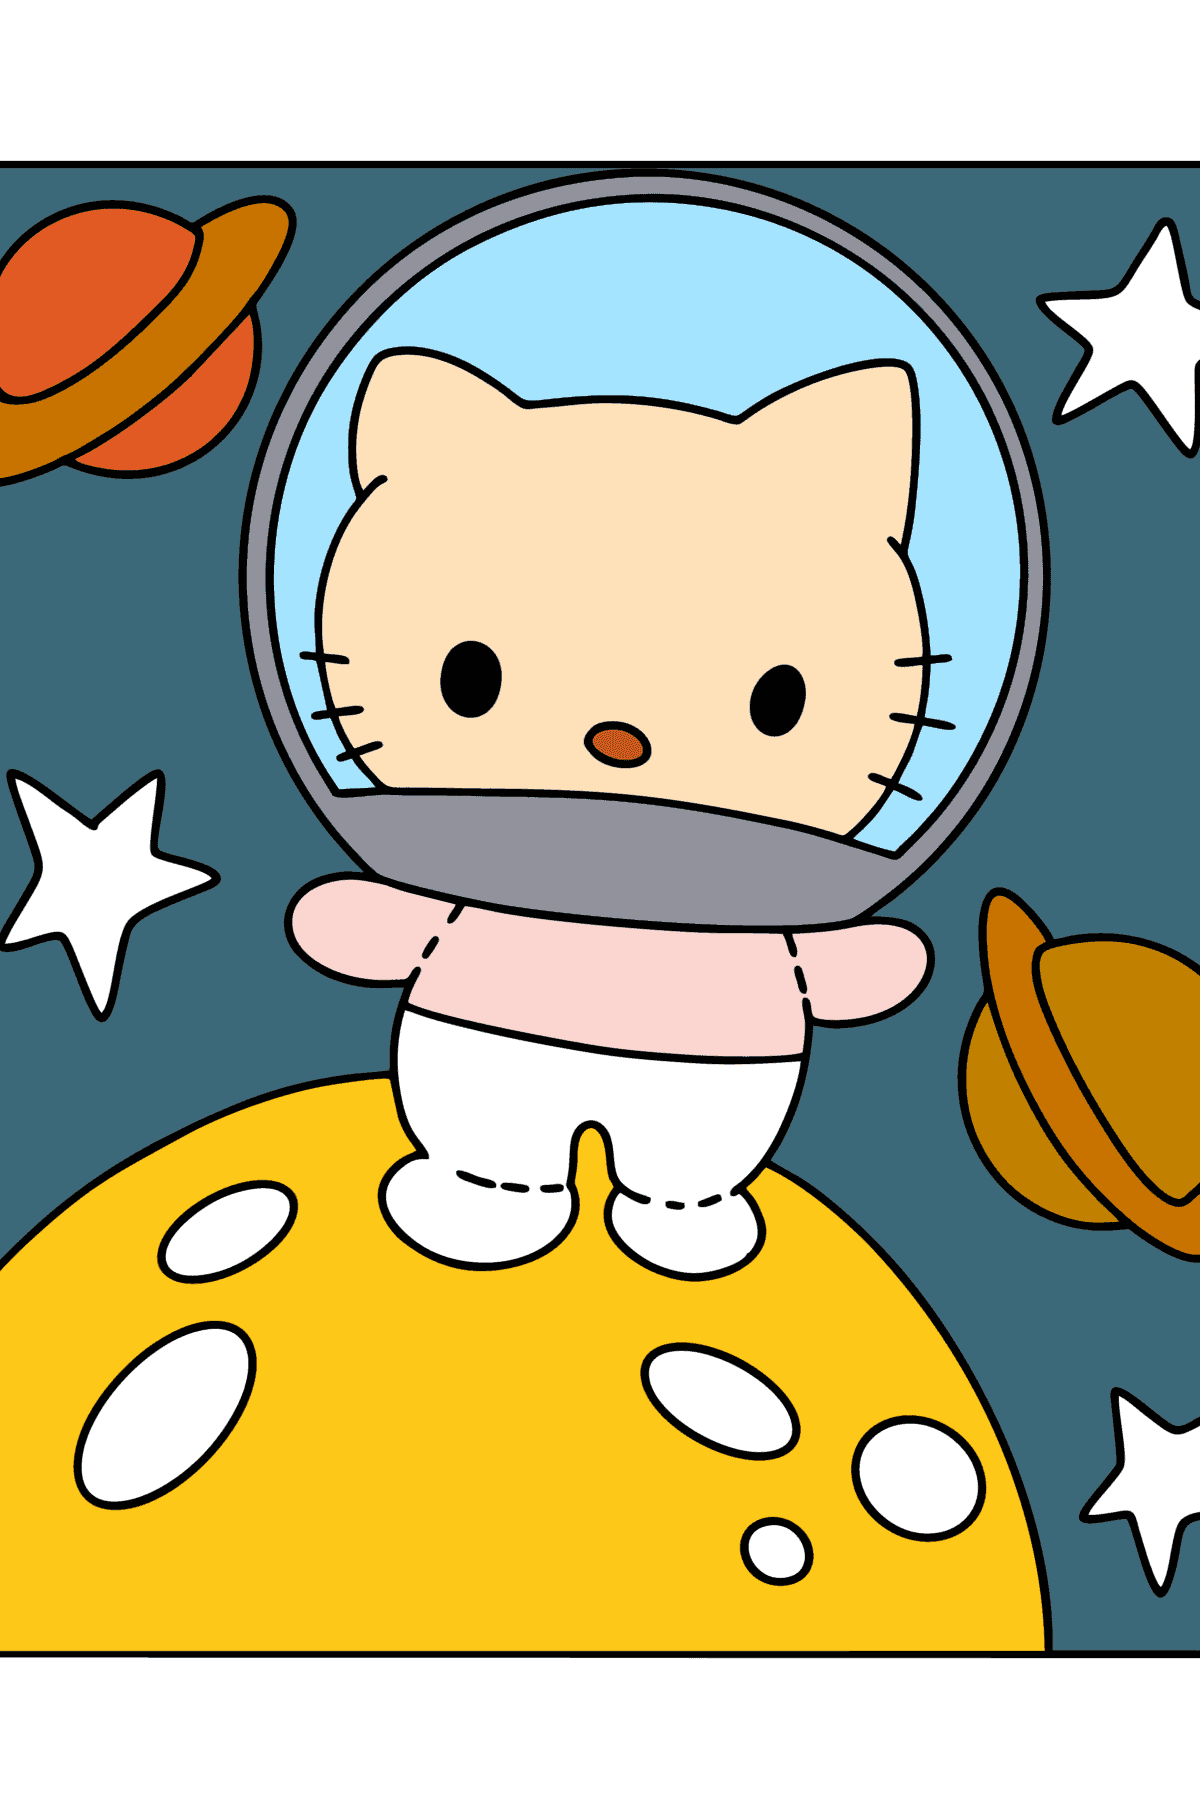 Boyama sayfası Hello Kitty astronot - Boyamalar çocuklar için